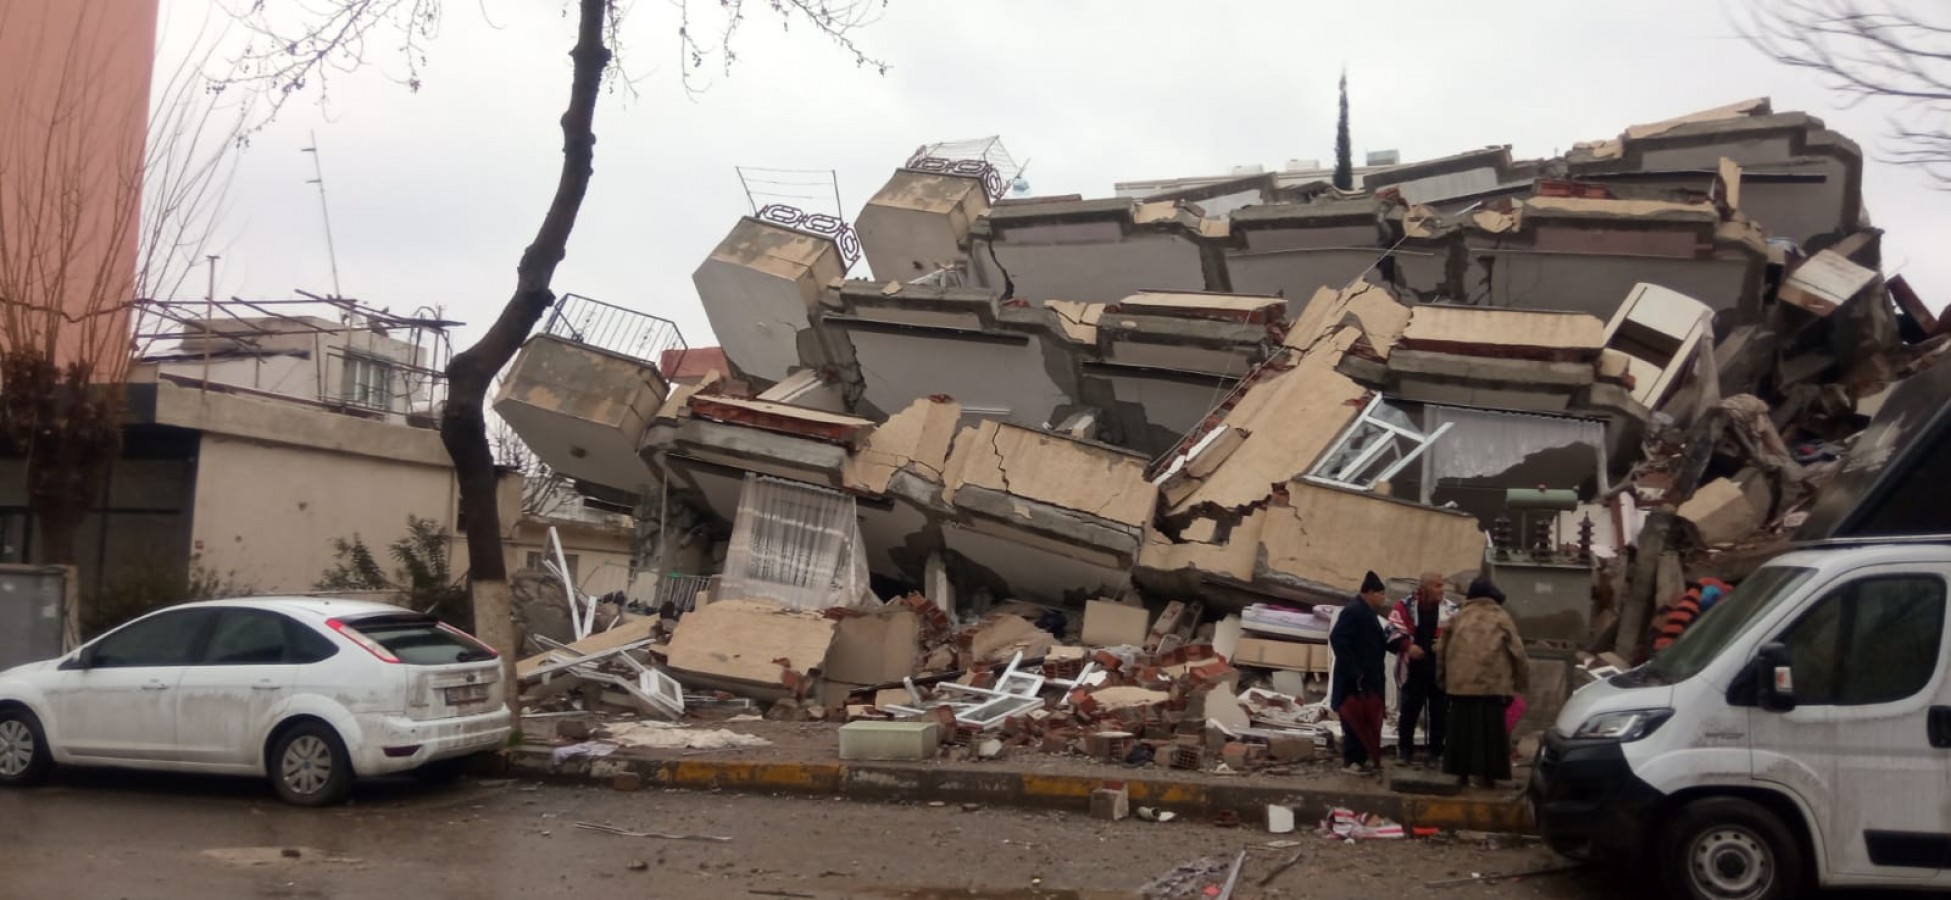 Şanlıurfa’da yıkılan binalara ilişkin soruşturma başlatıldı;